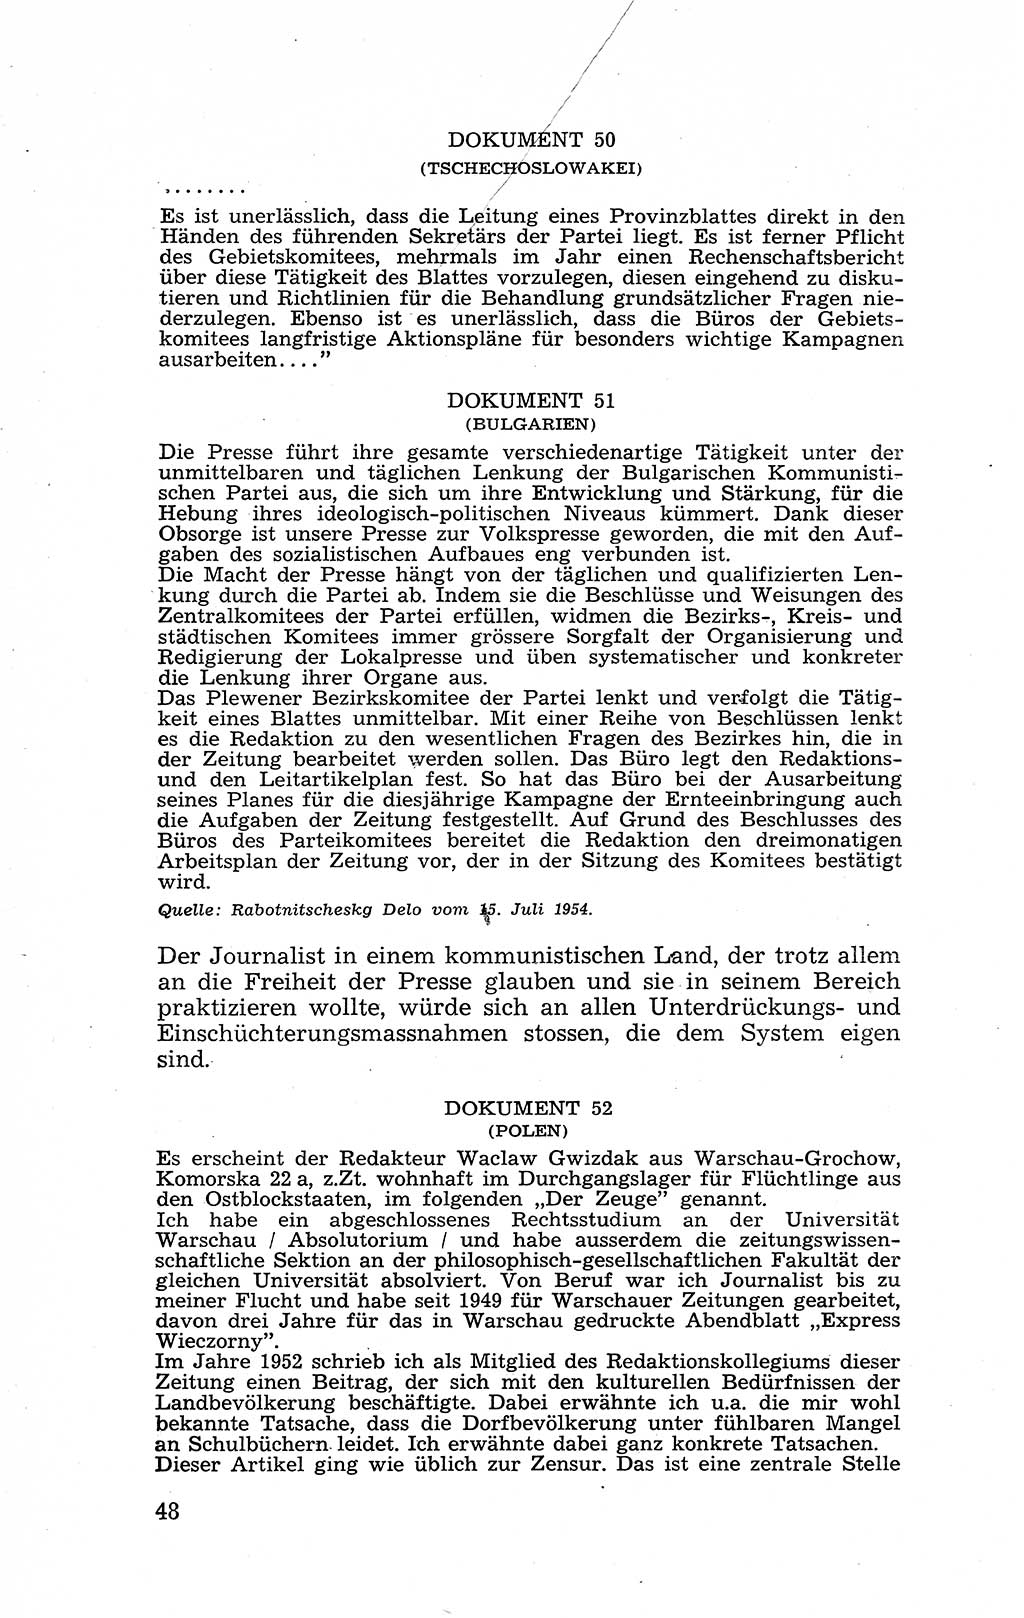 Recht in Fesseln, Dokumente, Internationale Juristen-Kommission [Bundesrepublik Deutschland (BRD)] 1955, Seite 48 (R. Dok. IJK BRD 1955, S. 48)